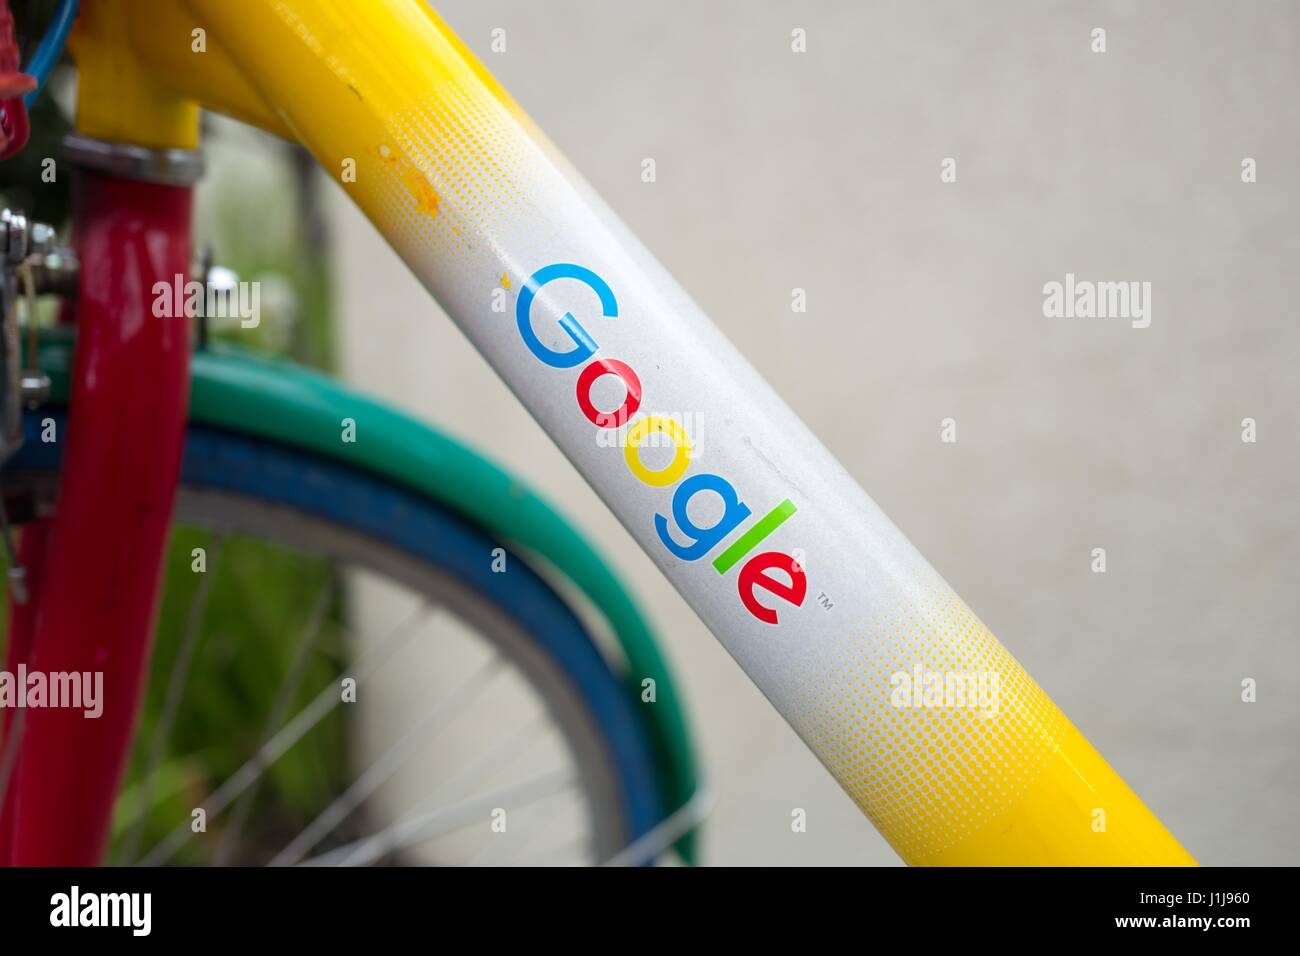 Logo de Google Inc sur un châssis d'un Google Bike, près du Googleplex, le siège de la Silicon Valley et de la technologie du moteur de recherche Google Inc, Mountain View, Californie, le 7 avril 2017. Banque D'Images